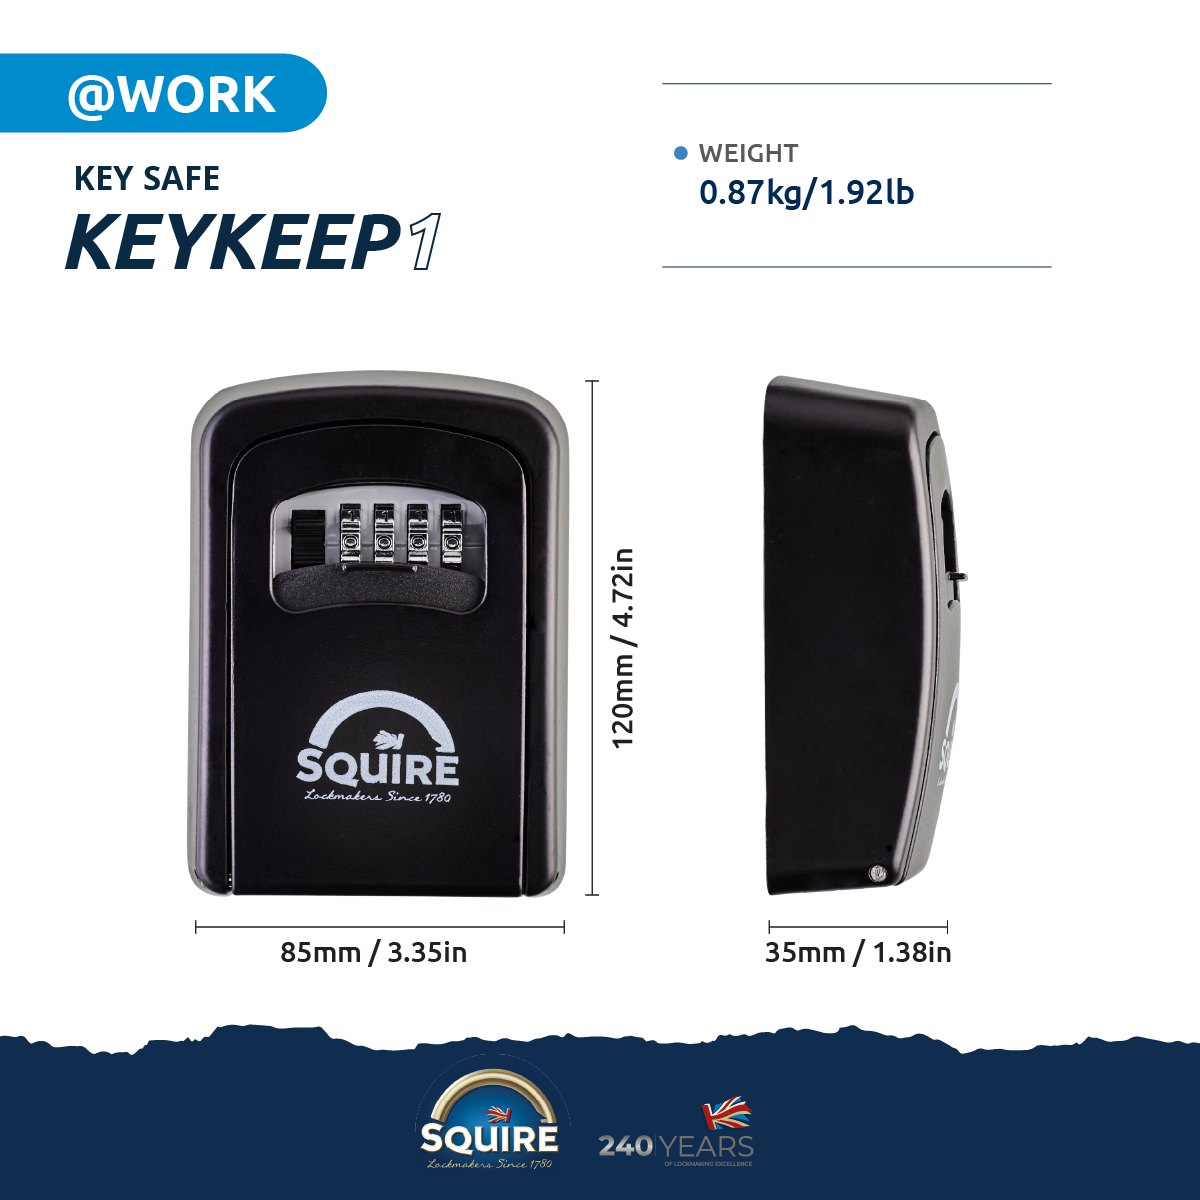 Boite à clé SQUIRE KEYKEEP1 pour stocker ses clés en toute sécurité